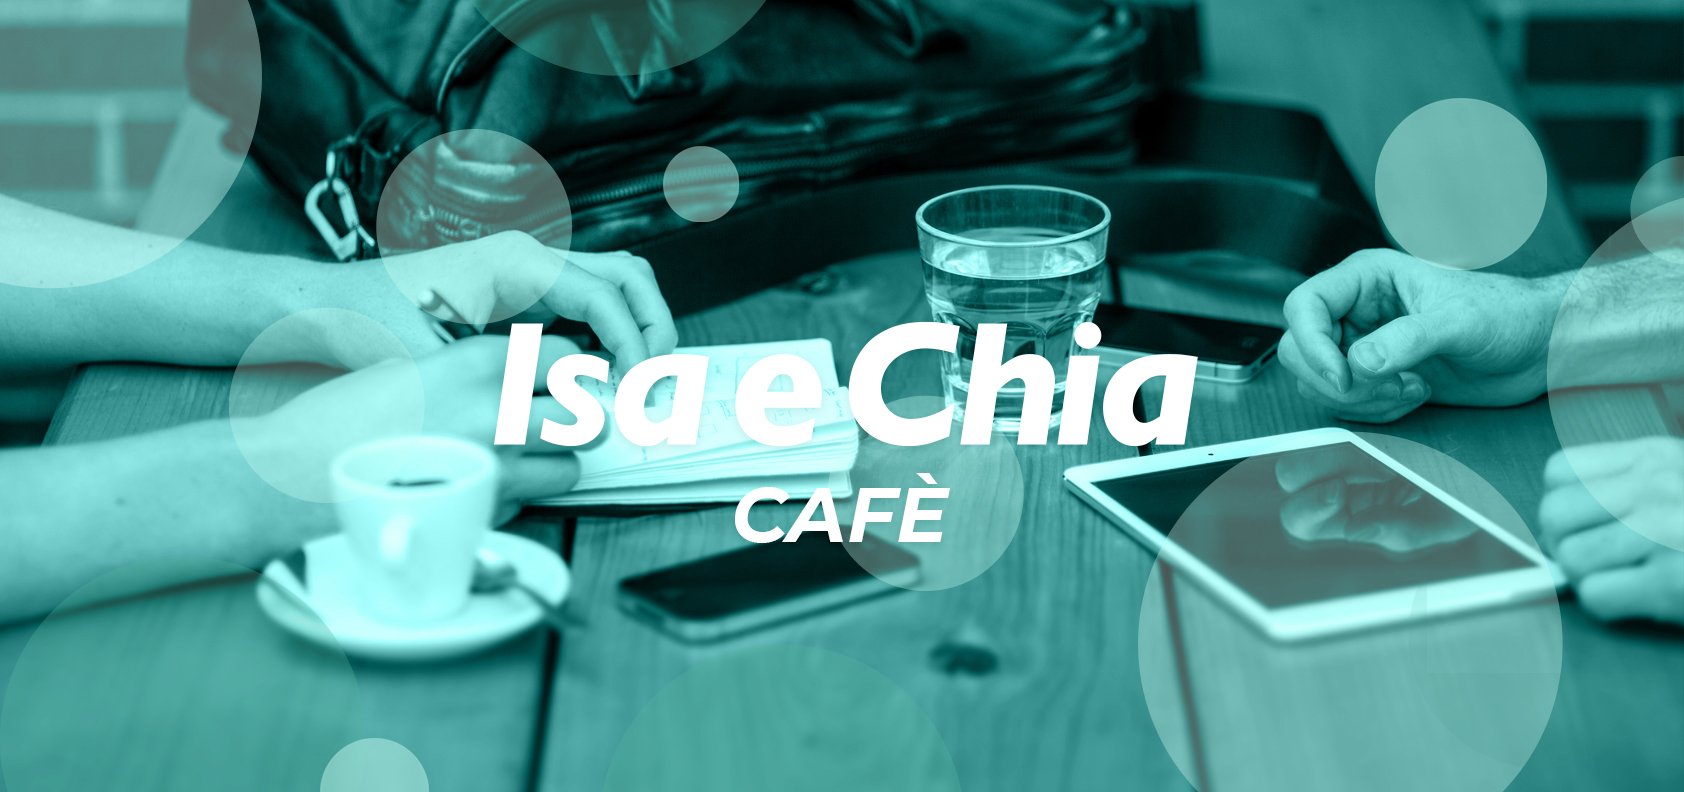 Isa e Chia Cafè, l’angolo delle chiacchiere in libertà (12/05/22)